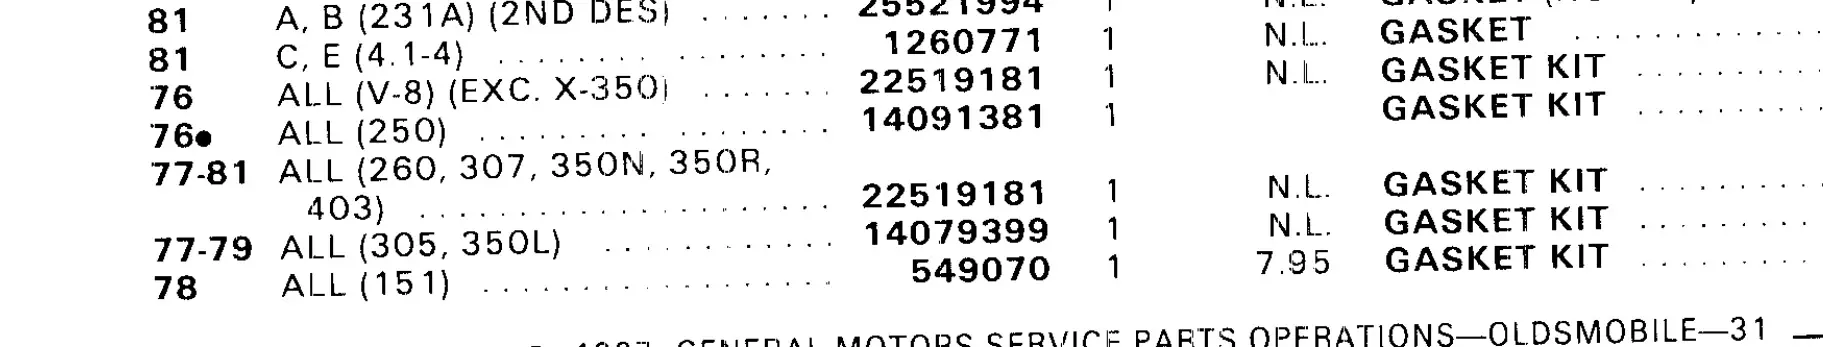 76-81 Olds V8 Oil Pan gasket part number.jpg